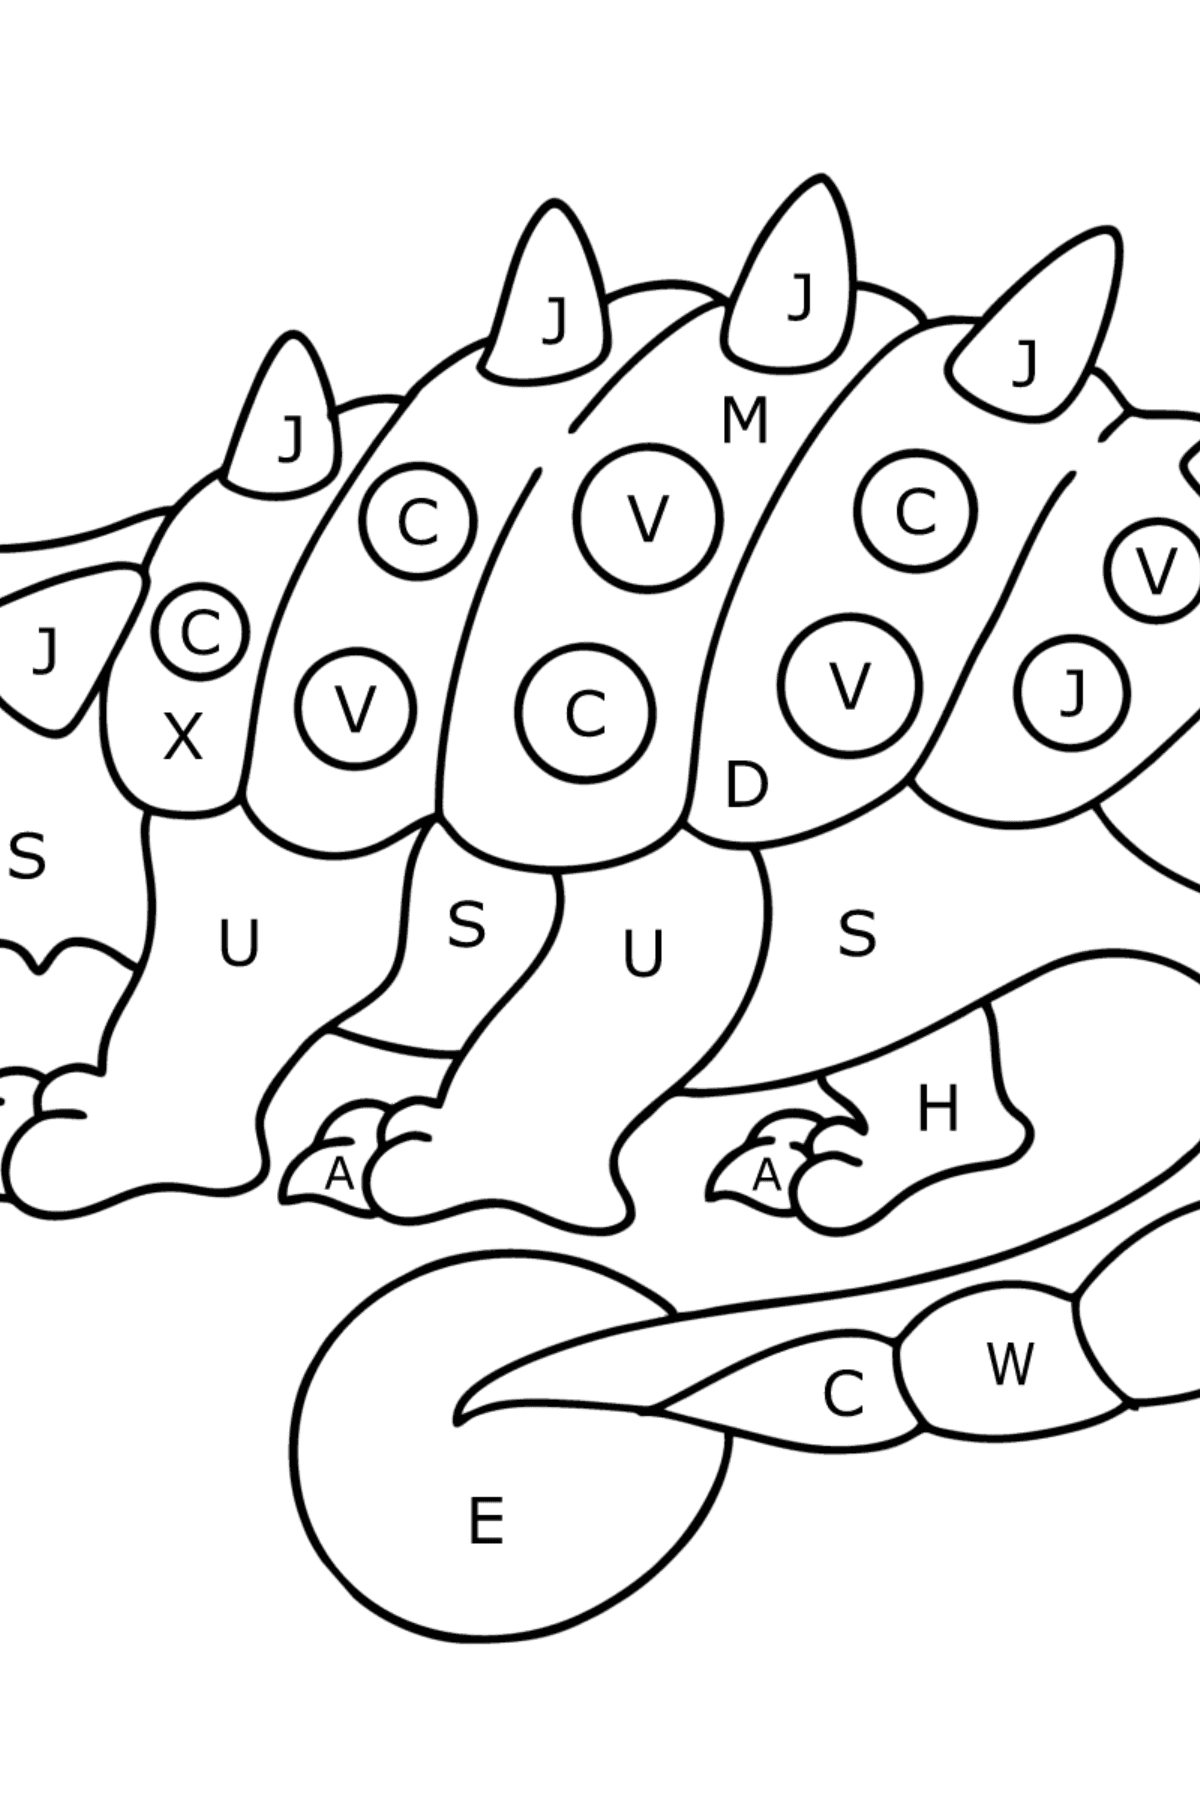 Dibujo de Anquilosaurio para colorear - Colorear por Letras para Niños